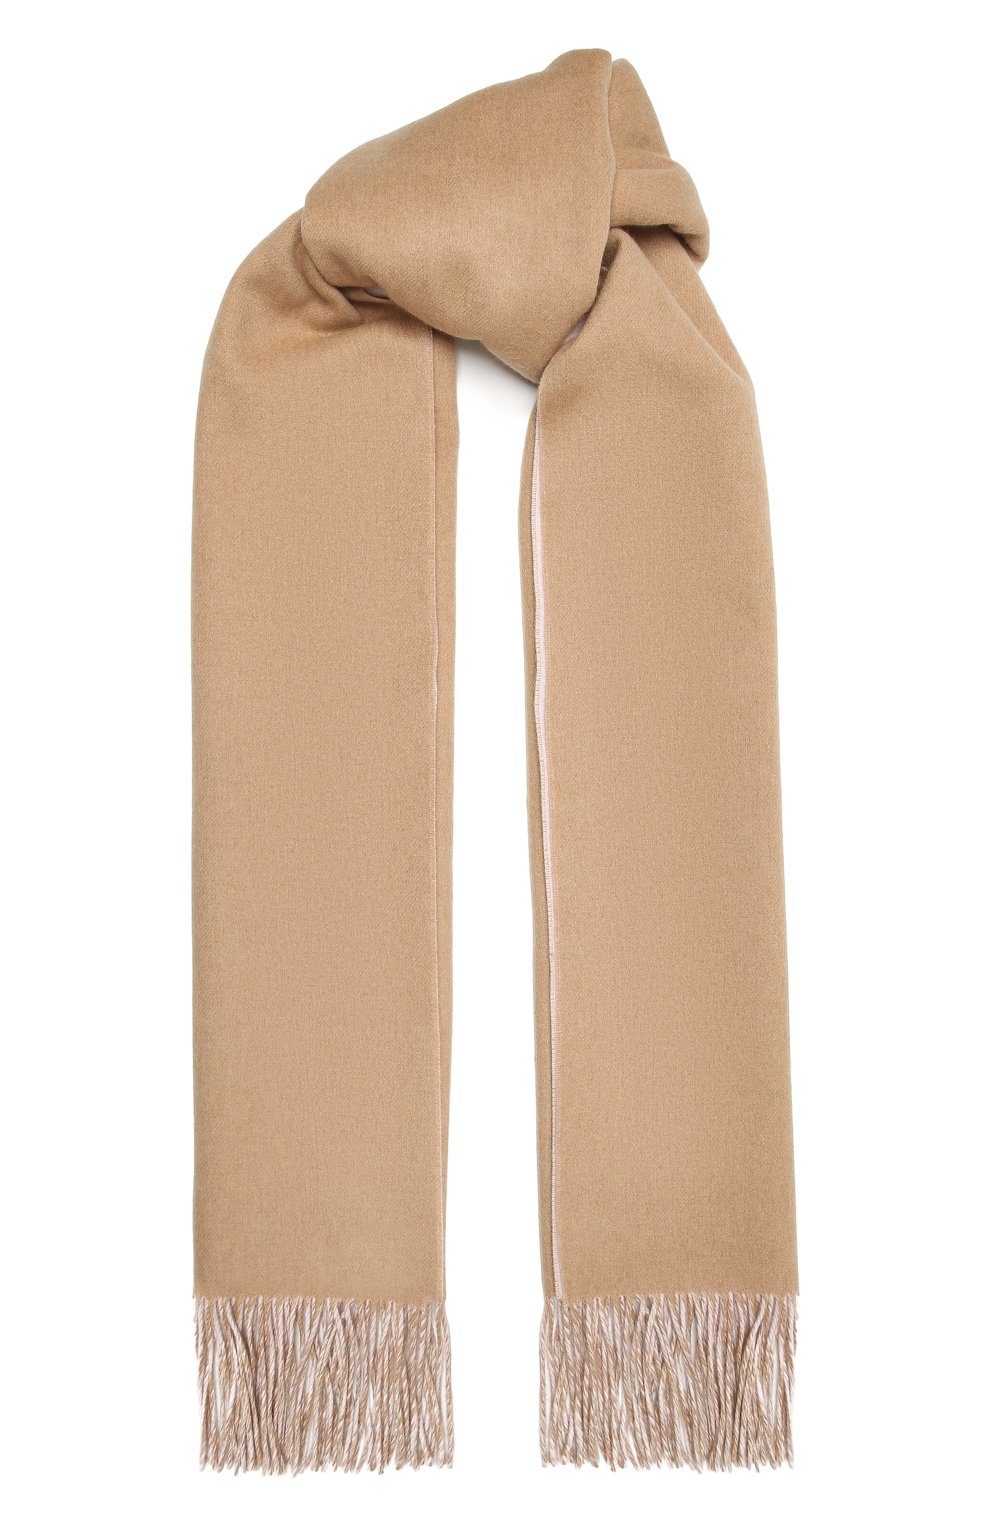 Женский кашемировый шарф BURBERRY бежевого цвета, арт. 8050333 | Фото 1 (Материал: Текстиль, Кашемир, Шерсть)